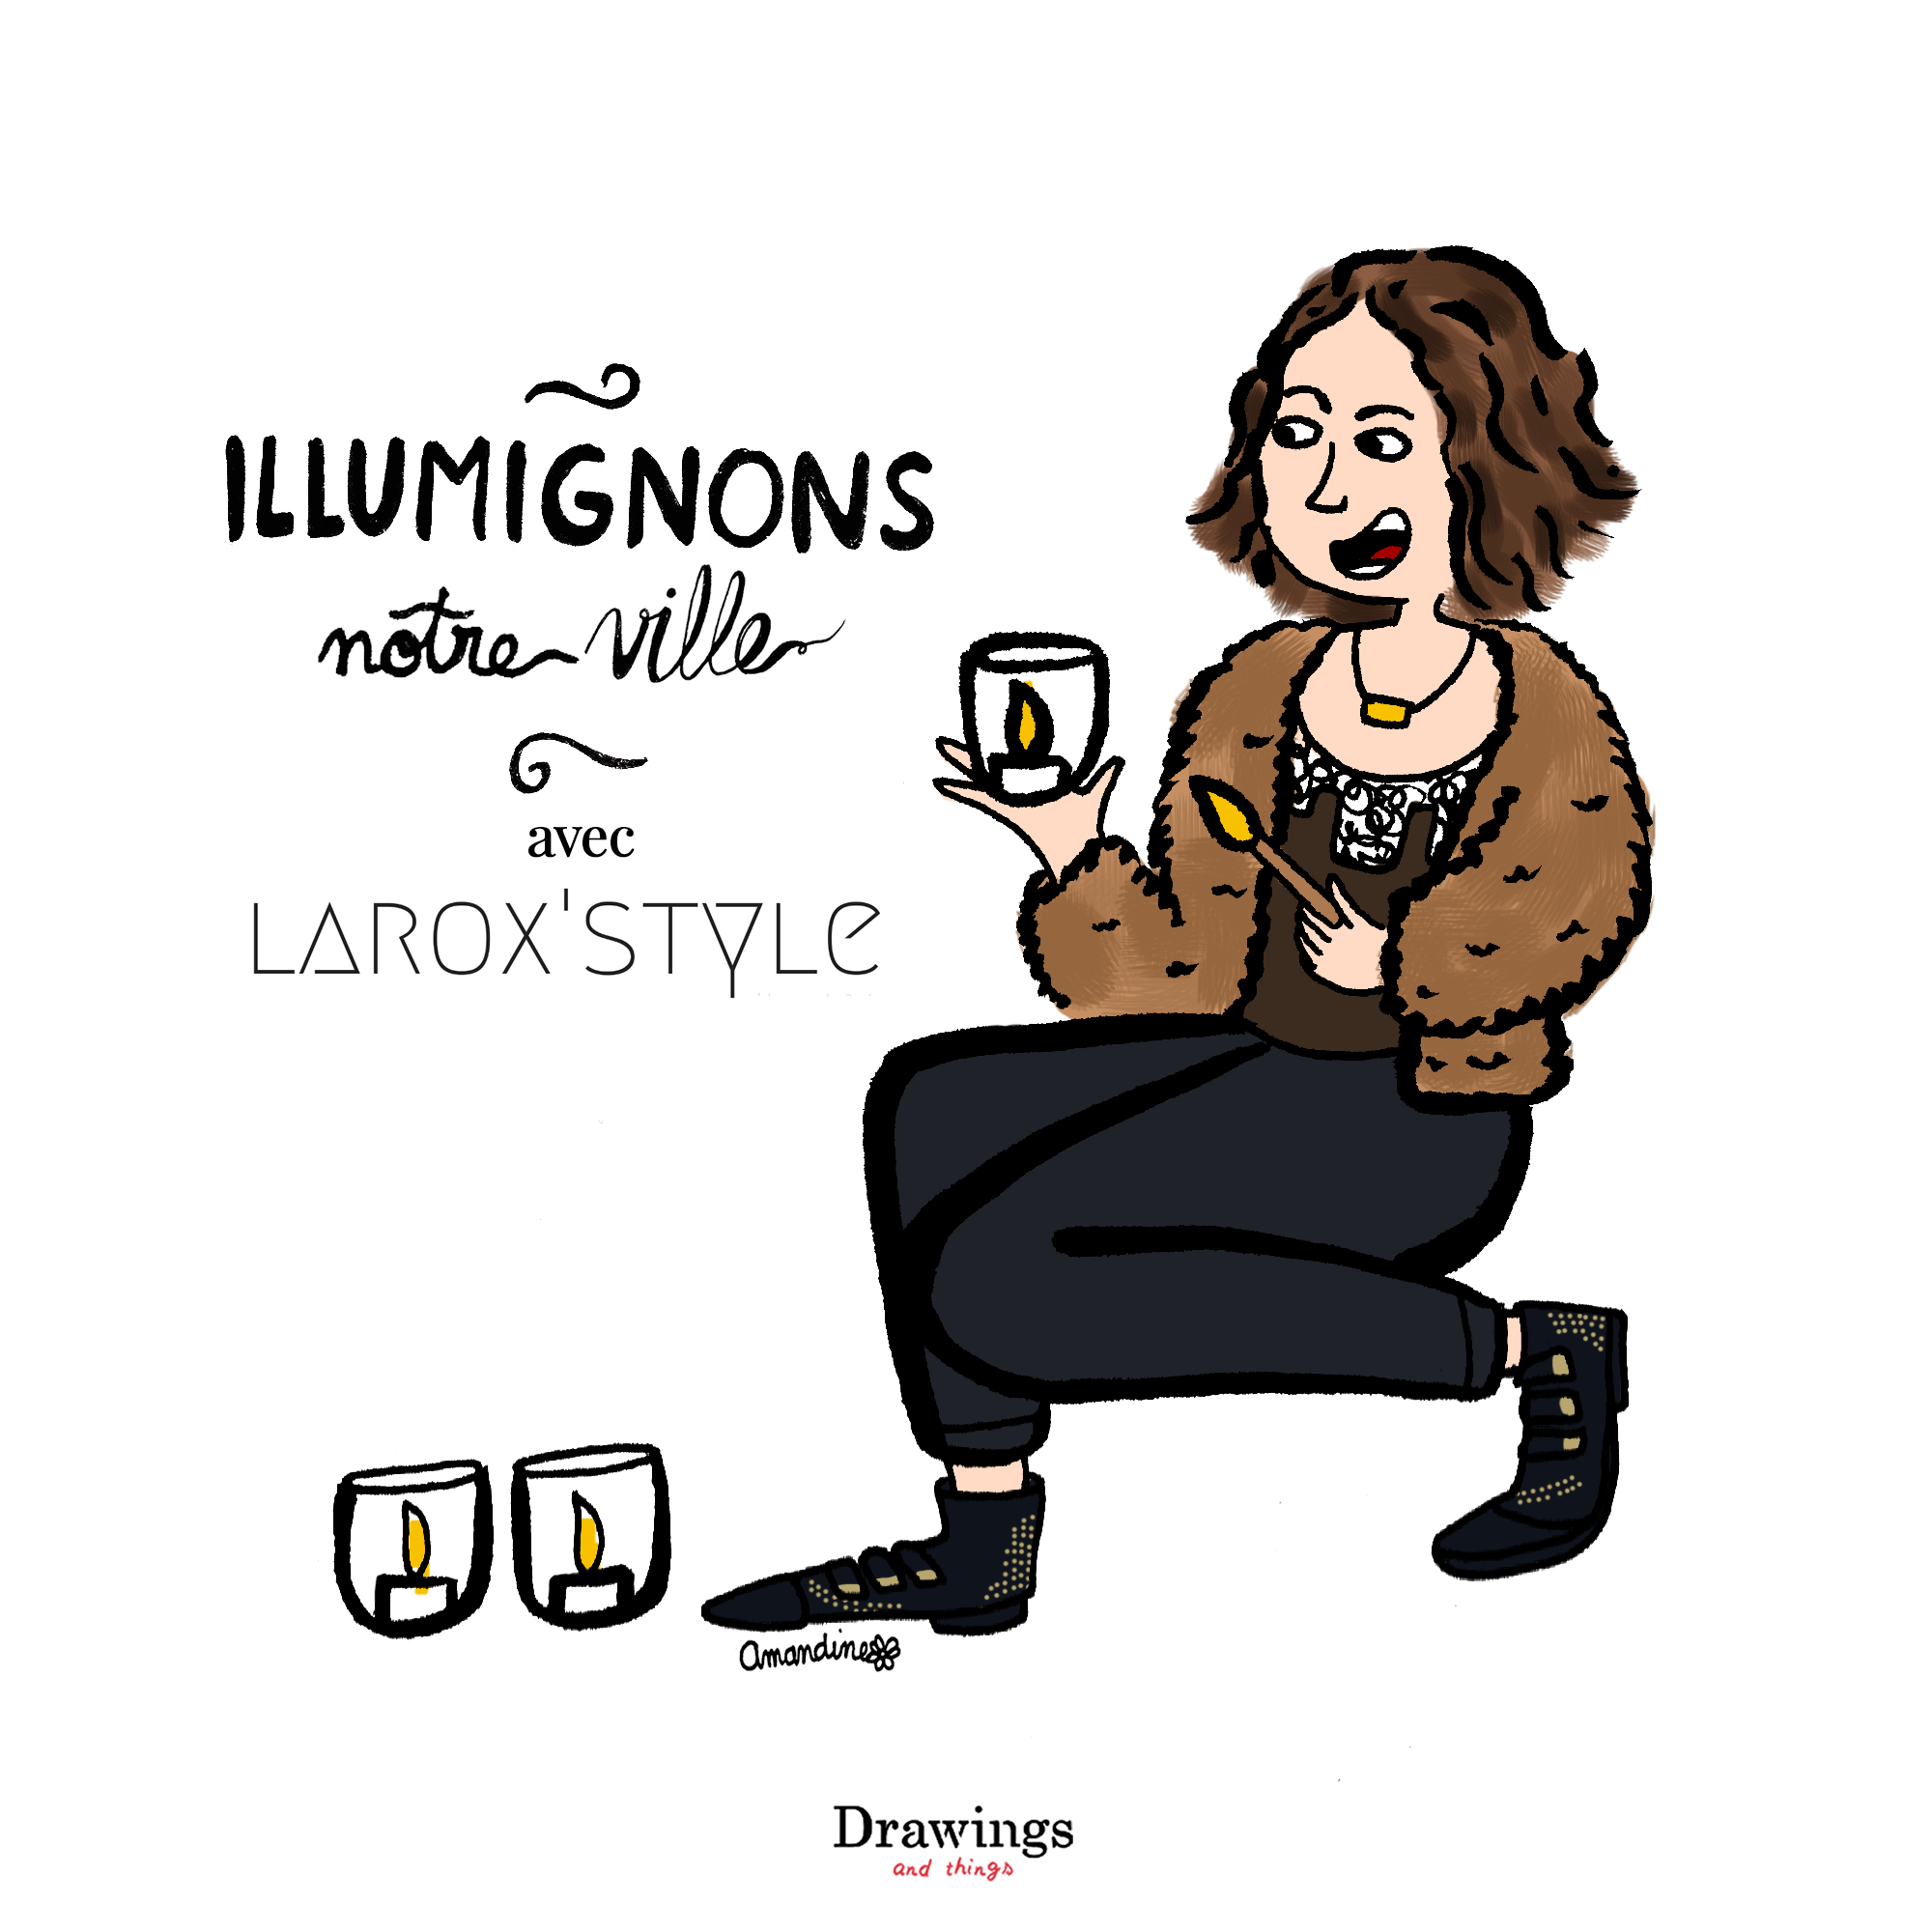 Les illuminations de la fête des lumières à Lyon racontées par LaRoxstyle by Drawings and things